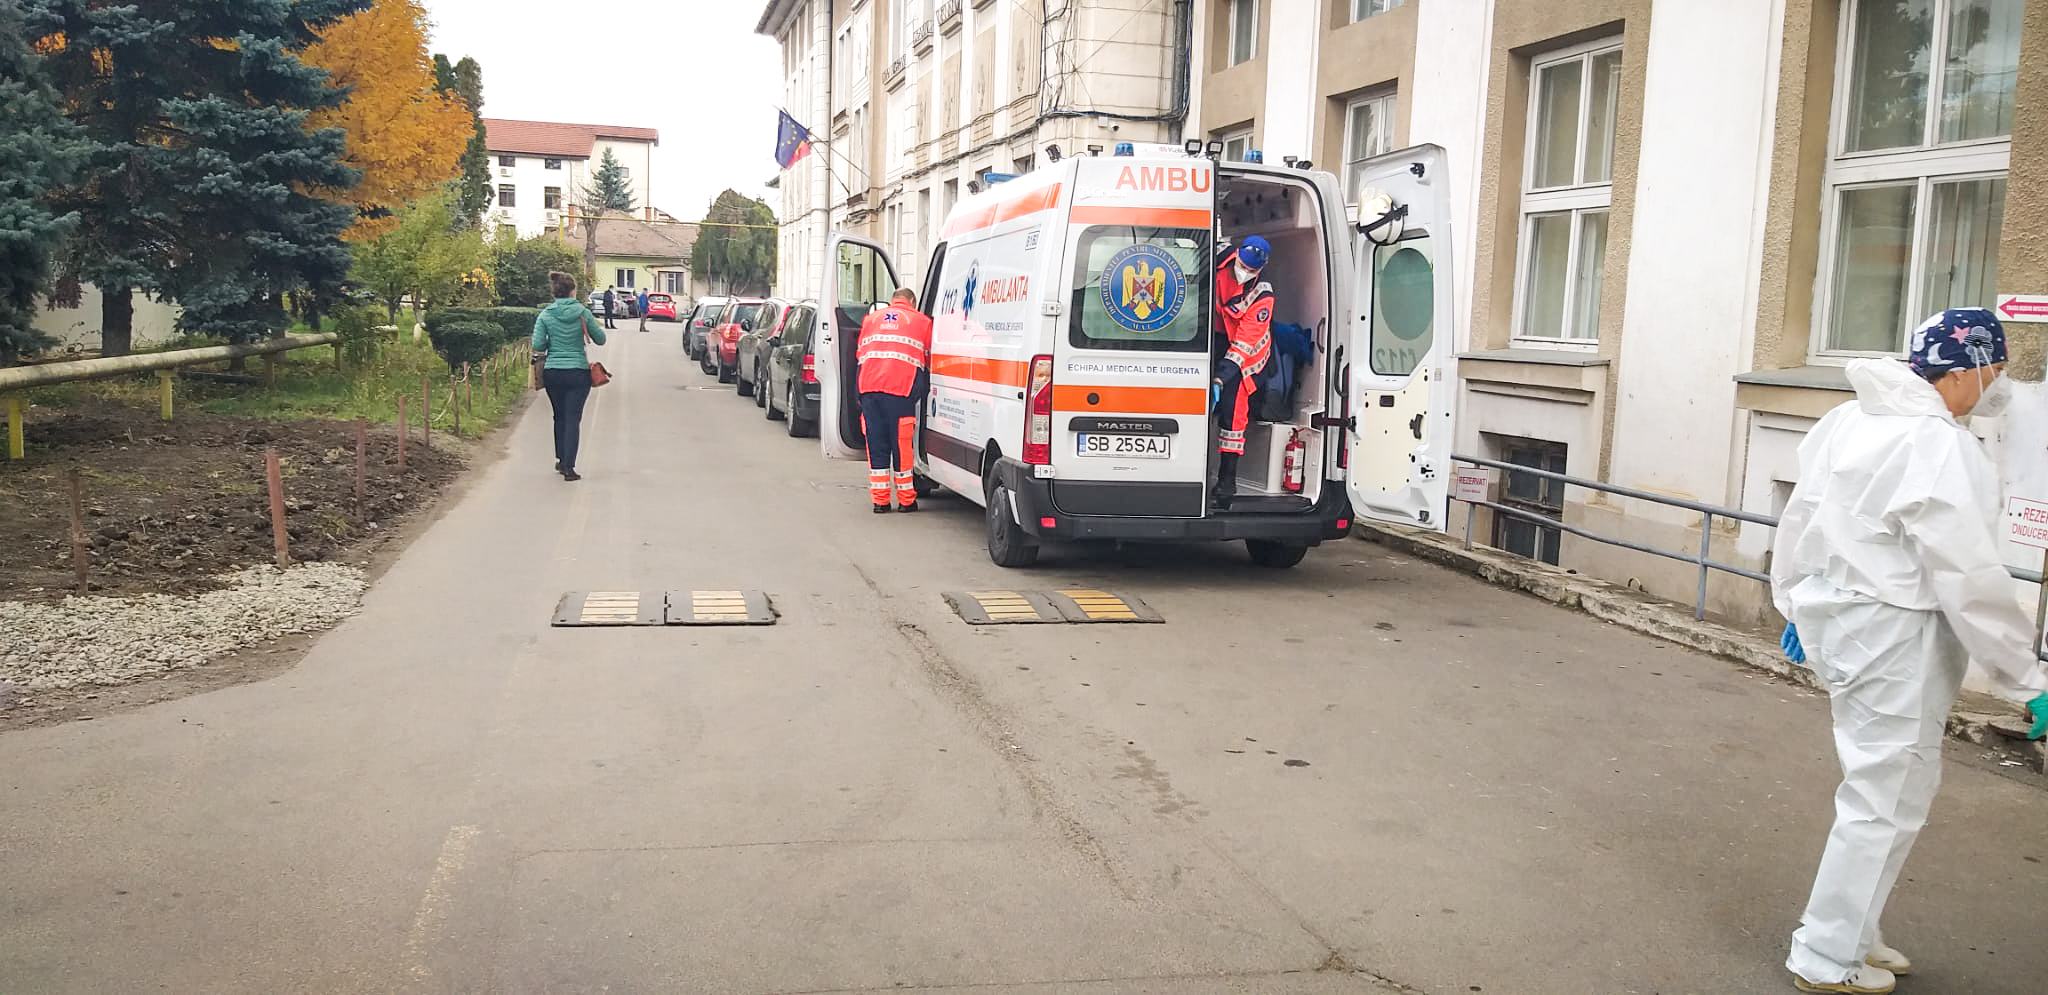 19 cazuri noi de coronavirus, în ultima zi, la Sibiu. Patru decese raportate, toate la persoane nevaccinate